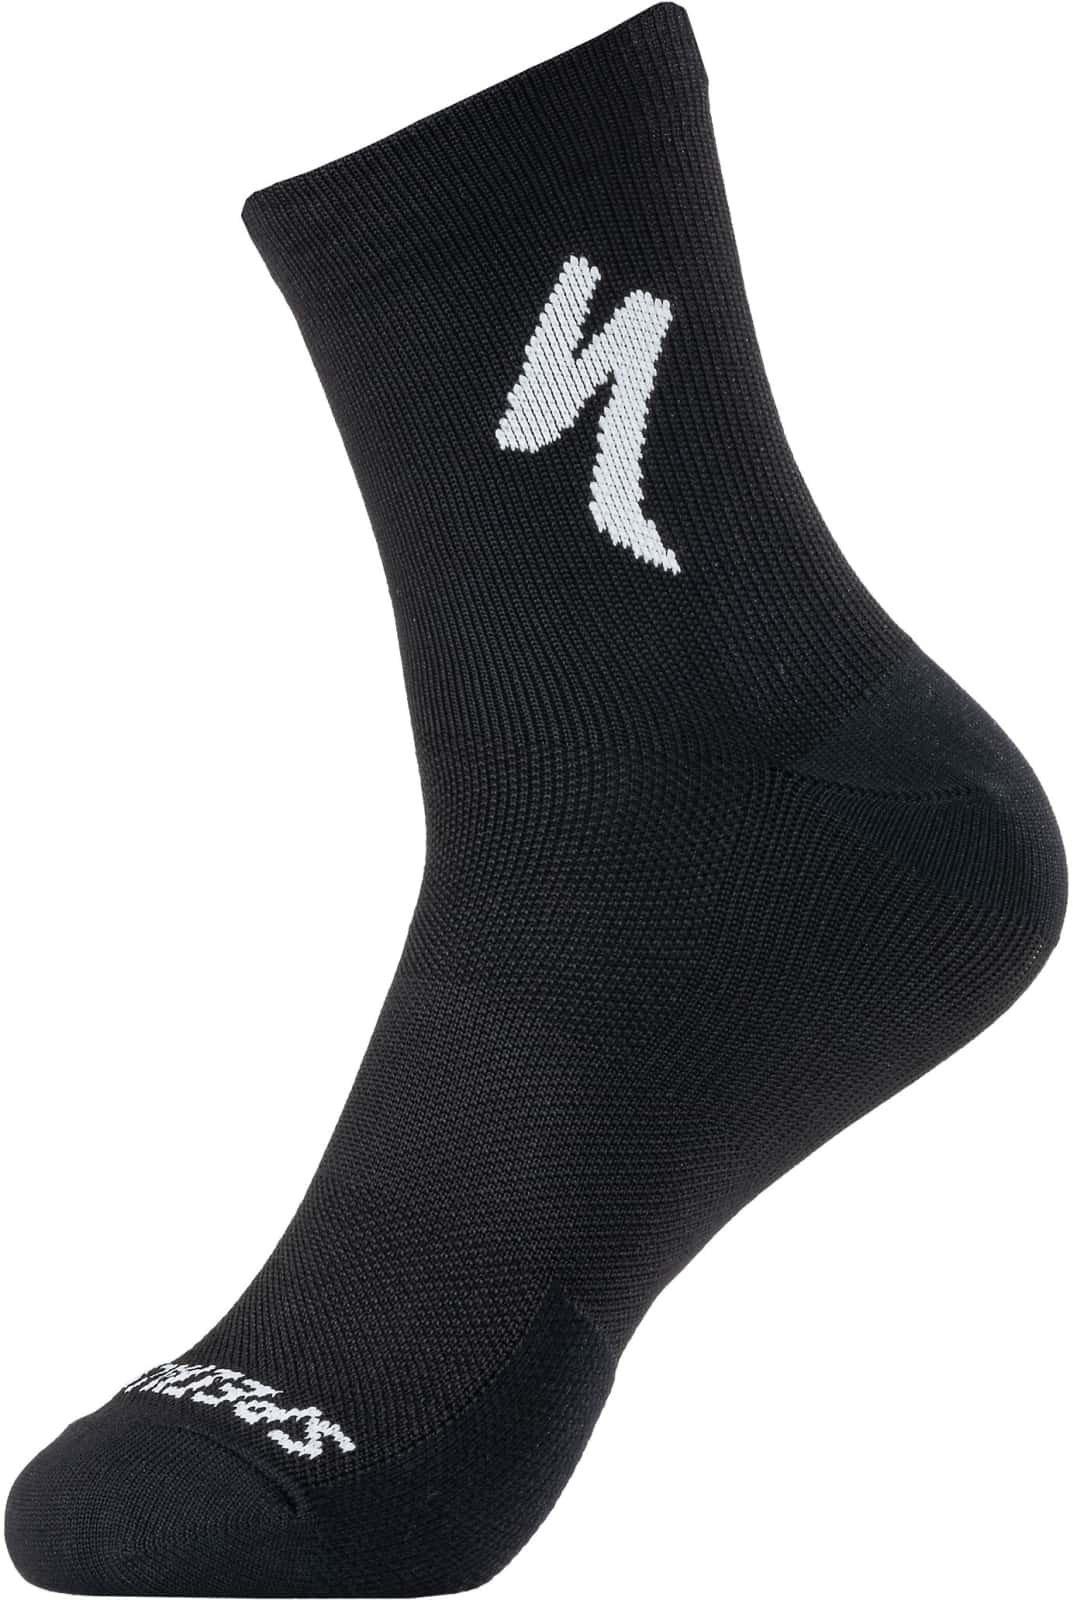 Ponožky Specialized Soft Air Road Mid Sock Veľkosť: S